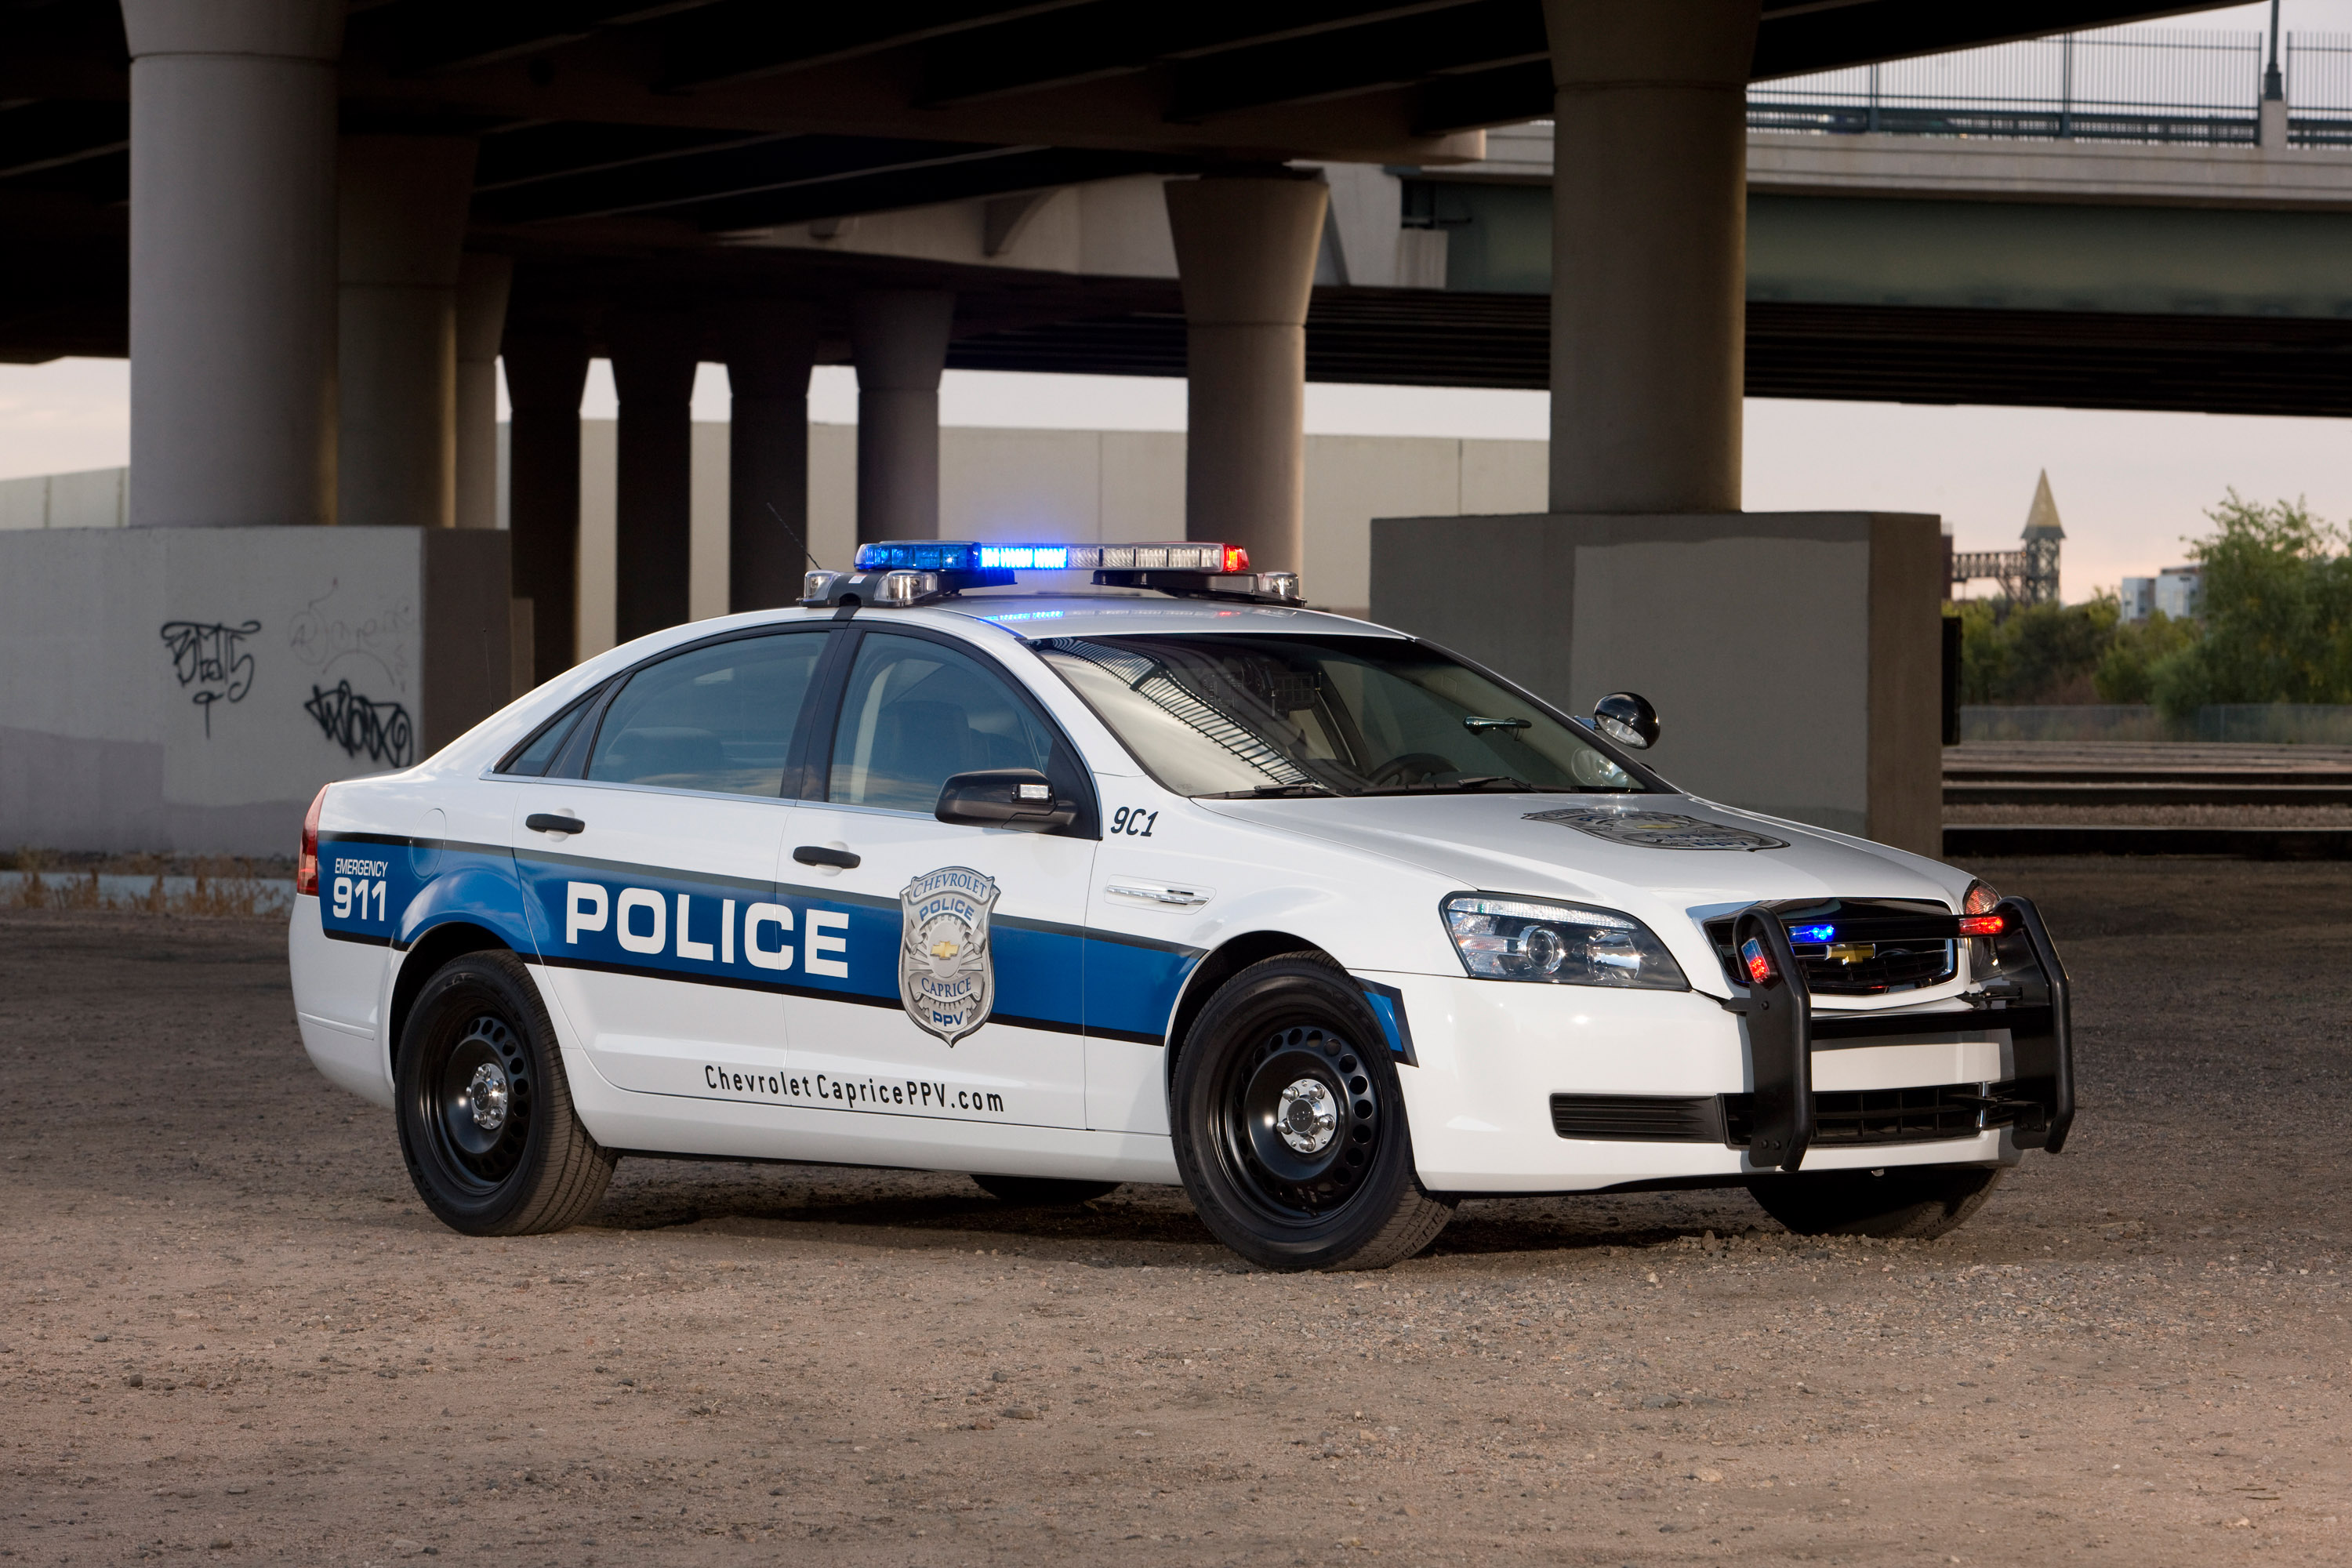 Марки полицейских машин. Chevrolet Caprice Police. Chevrolet Caprice 2006 Police. Chevrolet Caprice Police Patrol vehicle. Chevrolet Caprice Police 2010.